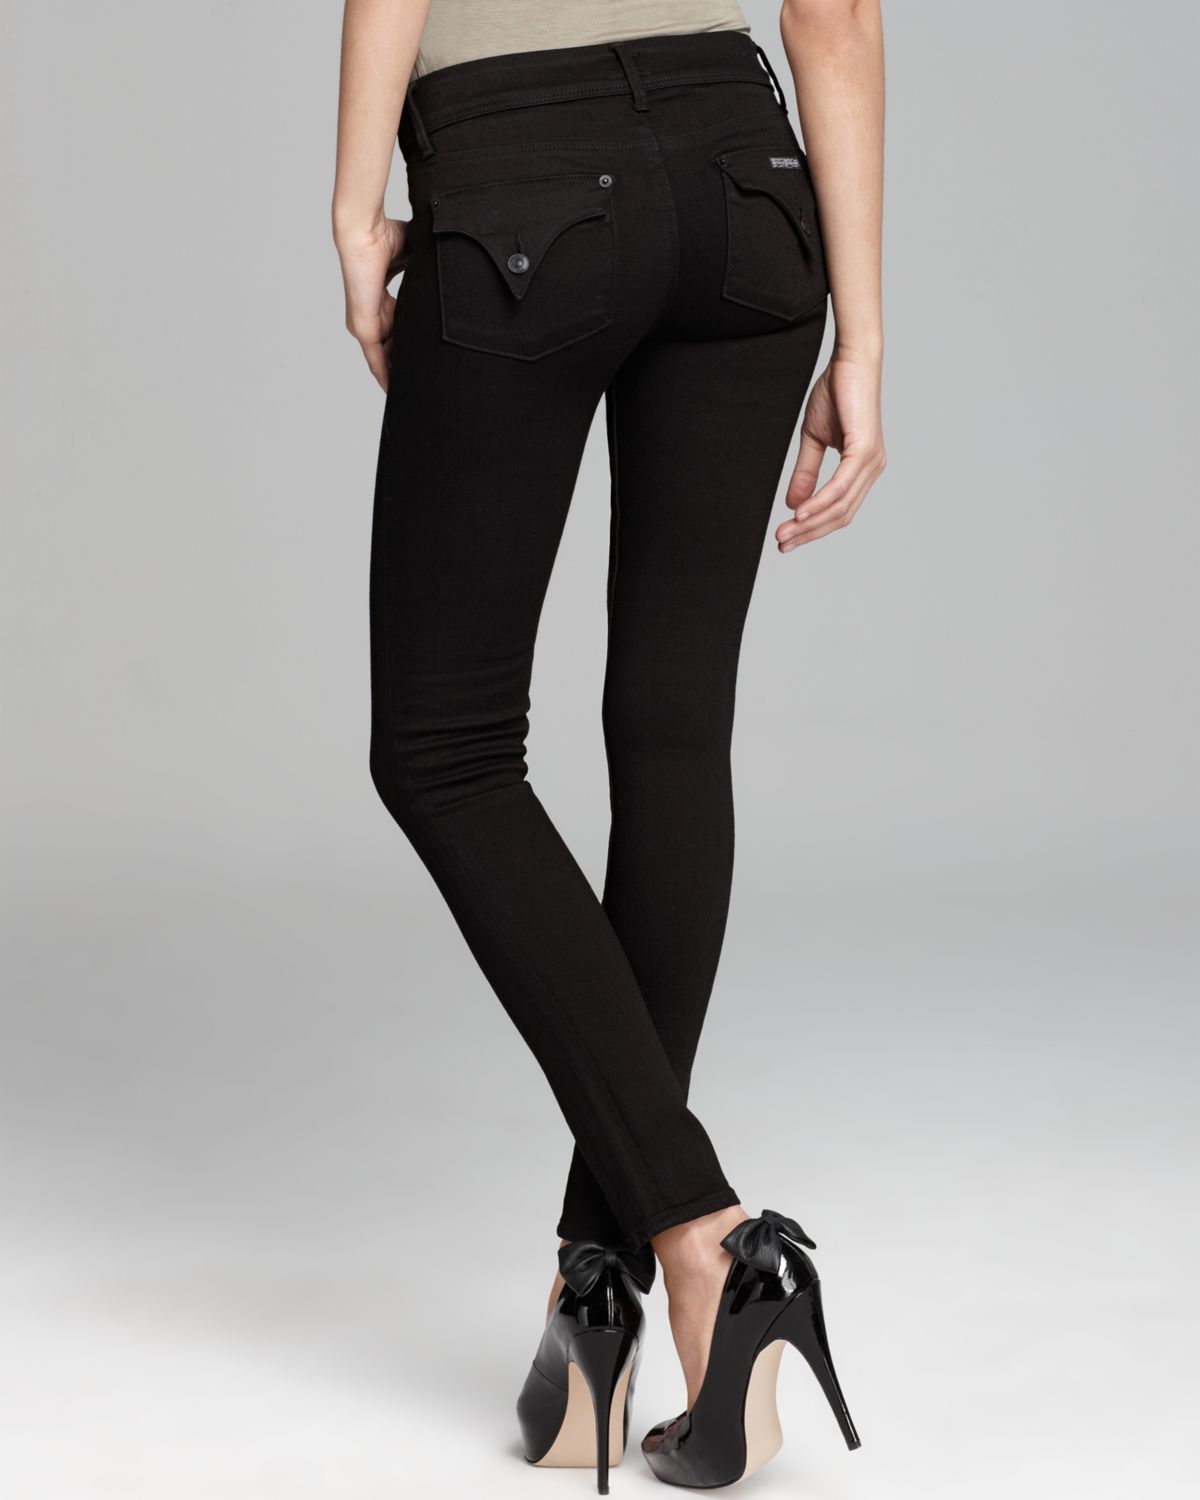 Lyst - Hudson Jeans Jeans - Collin Skinny In Black in Black